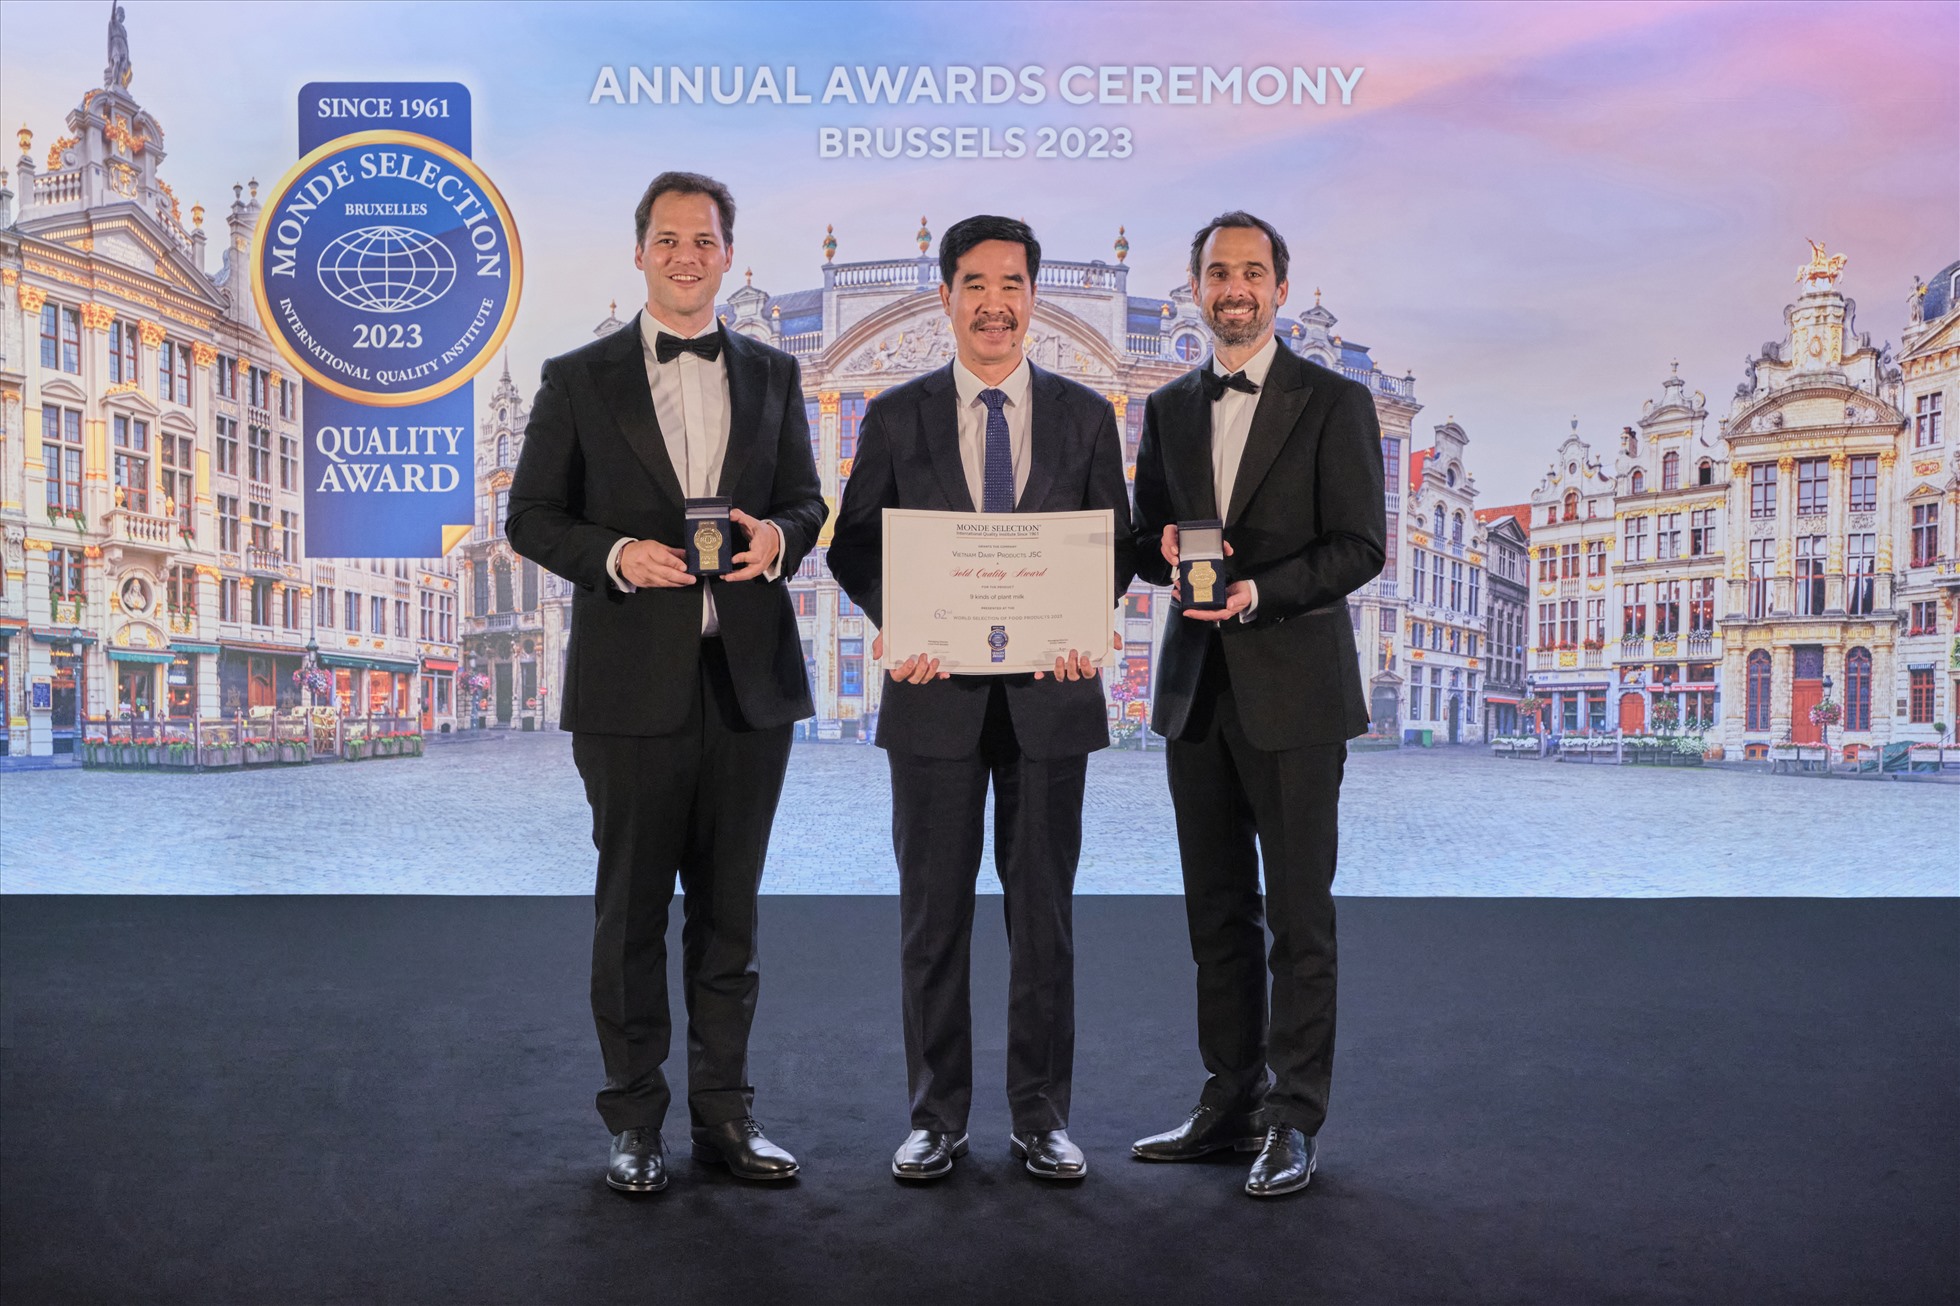 Ông Nguyễn Quốc Khánh, Giám đốc điều hành Nghiên cứu & Phát triển đại diện Vinamilk, nhận 2 giải Vàng về Chất lượng từ tổ chức Monde Selection. Ảnh: Vinamilk